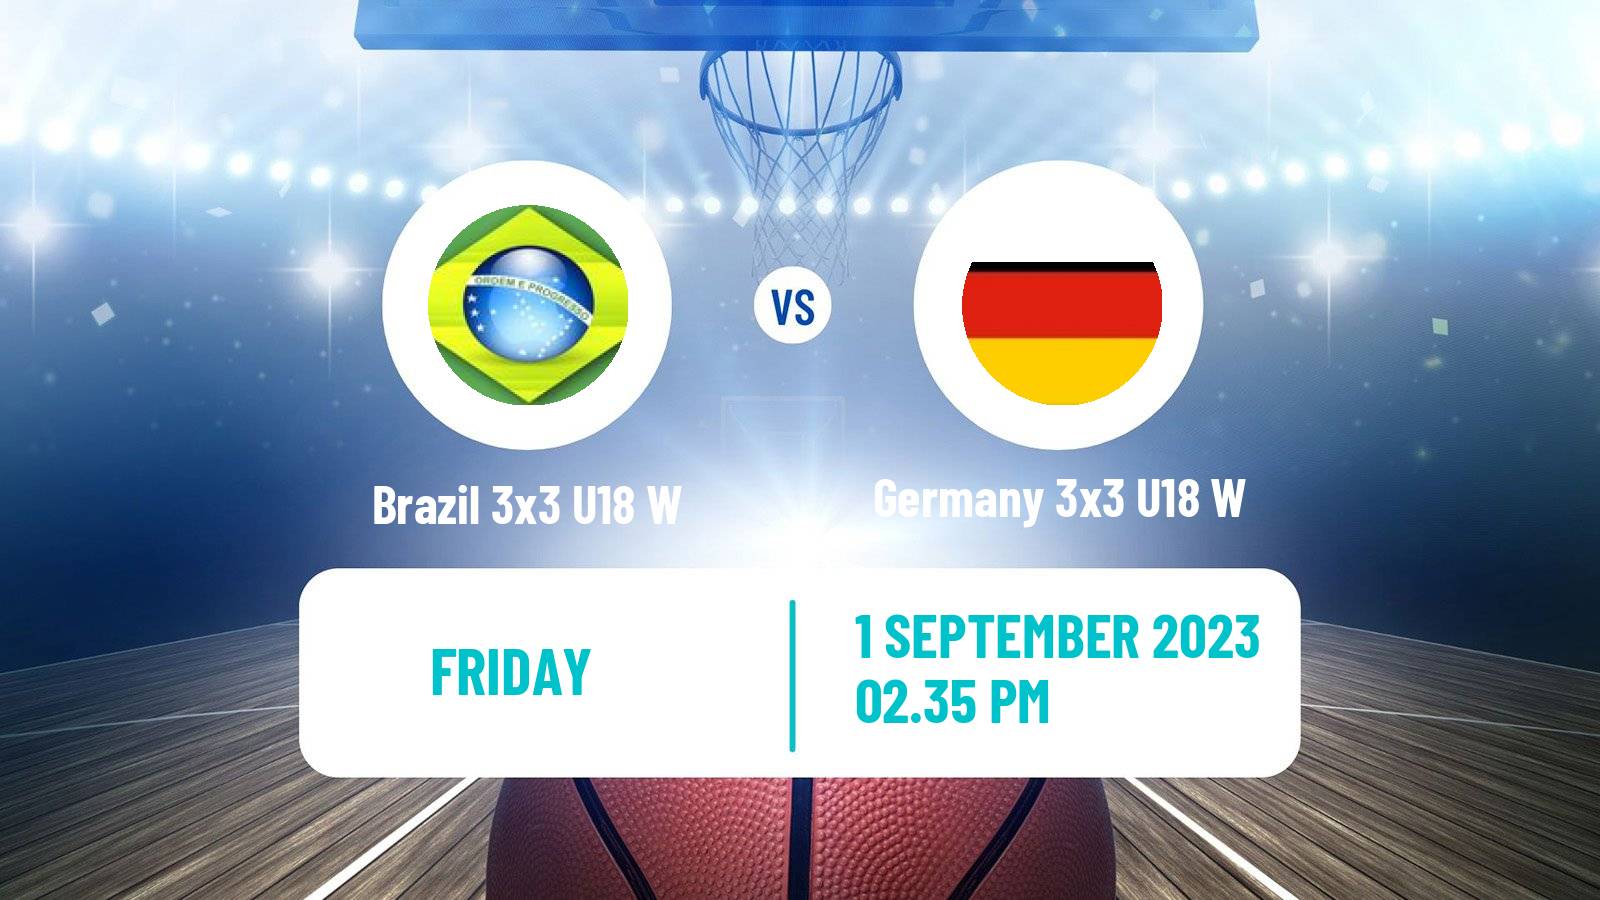 Basketball World Cup Basketball 3x3 U18 Women Brazil 3x3 U18 W - Germany 3x3 U18 W